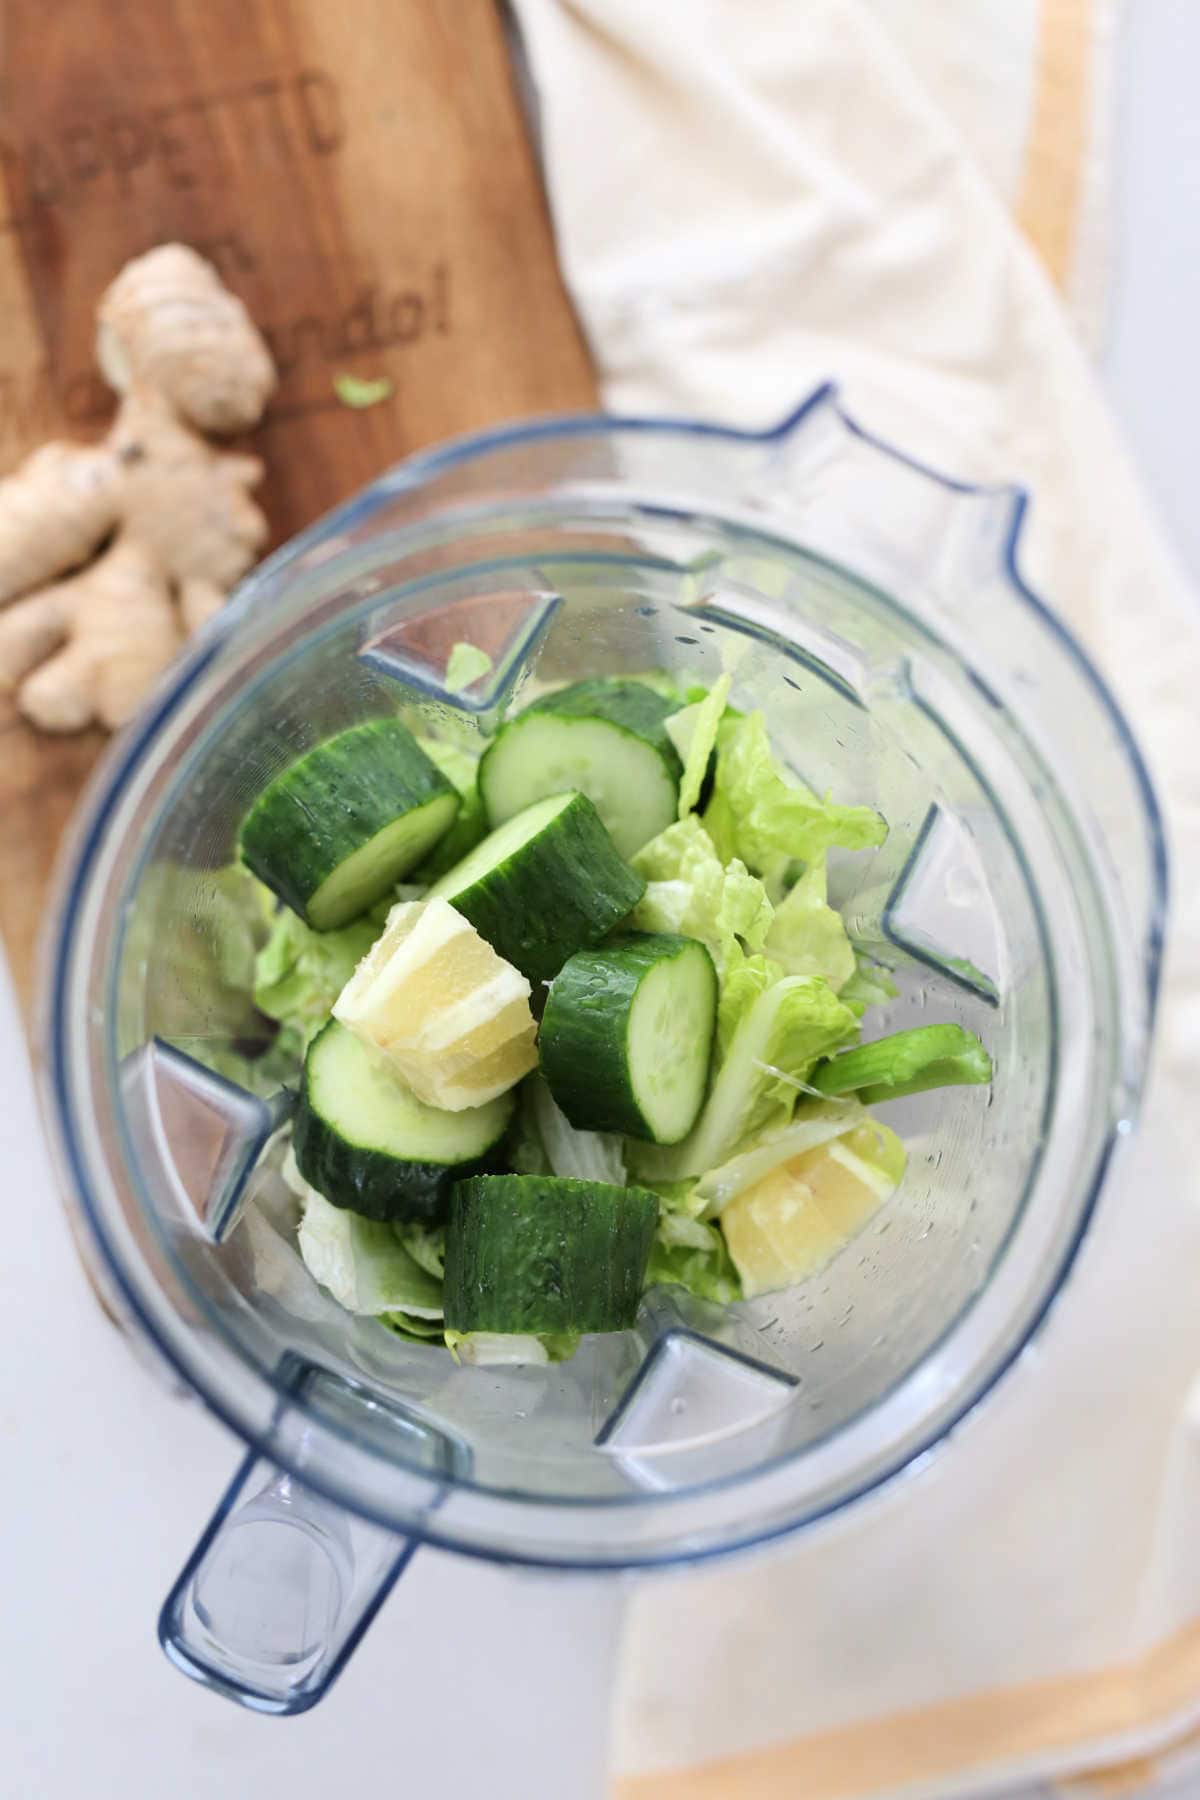 green vegetable juice ingredients chopped in a blender